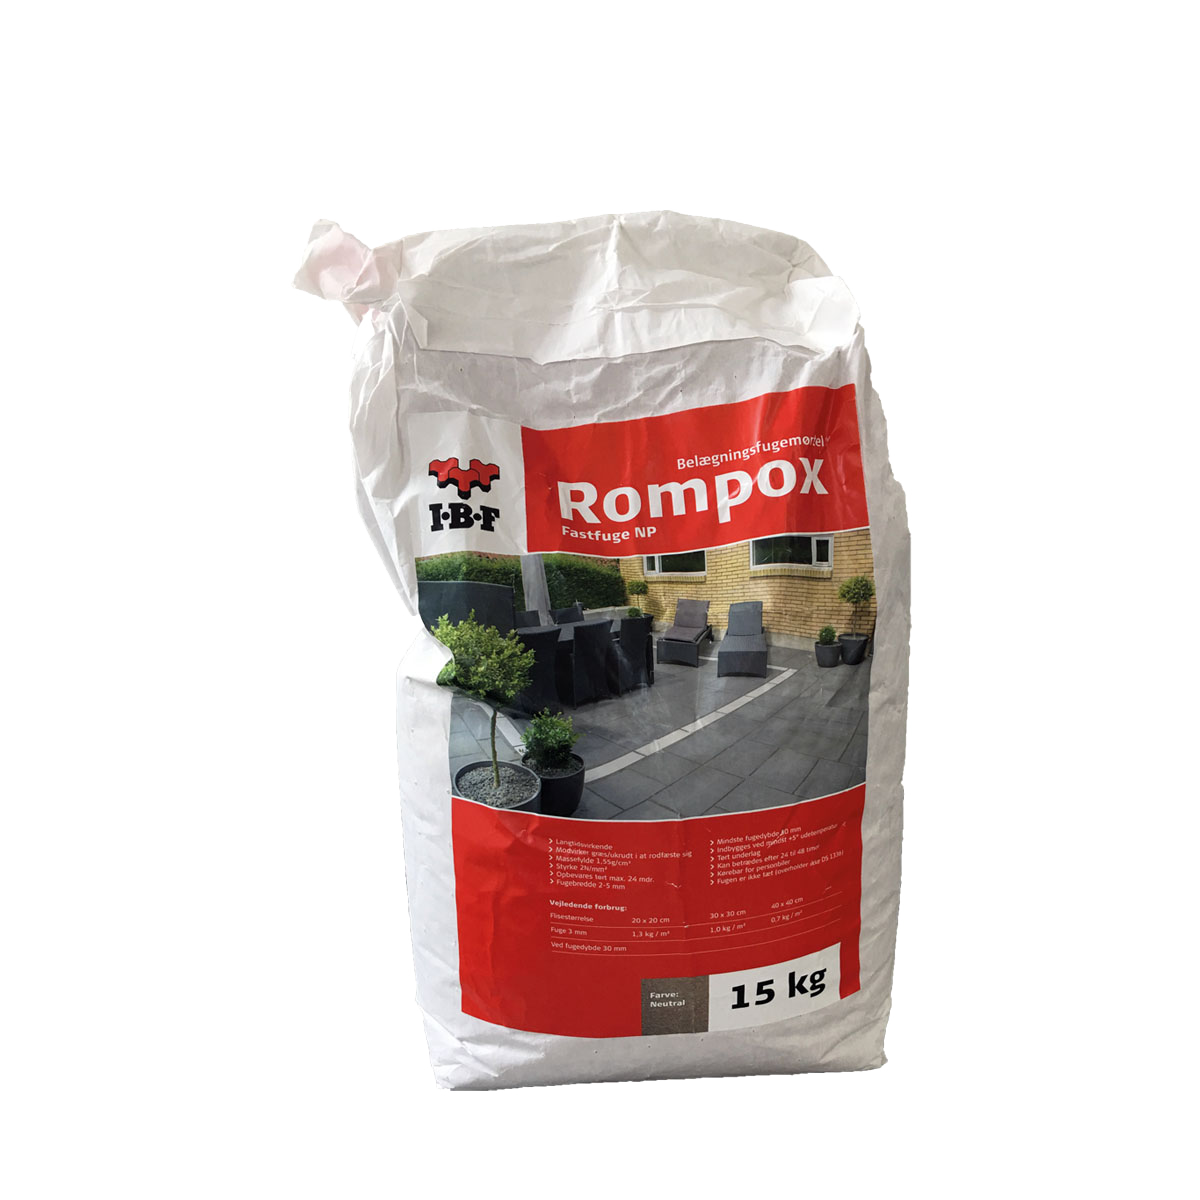 Rompox® Fastfuge NP Sort-Basalt (15 kg. ps.)